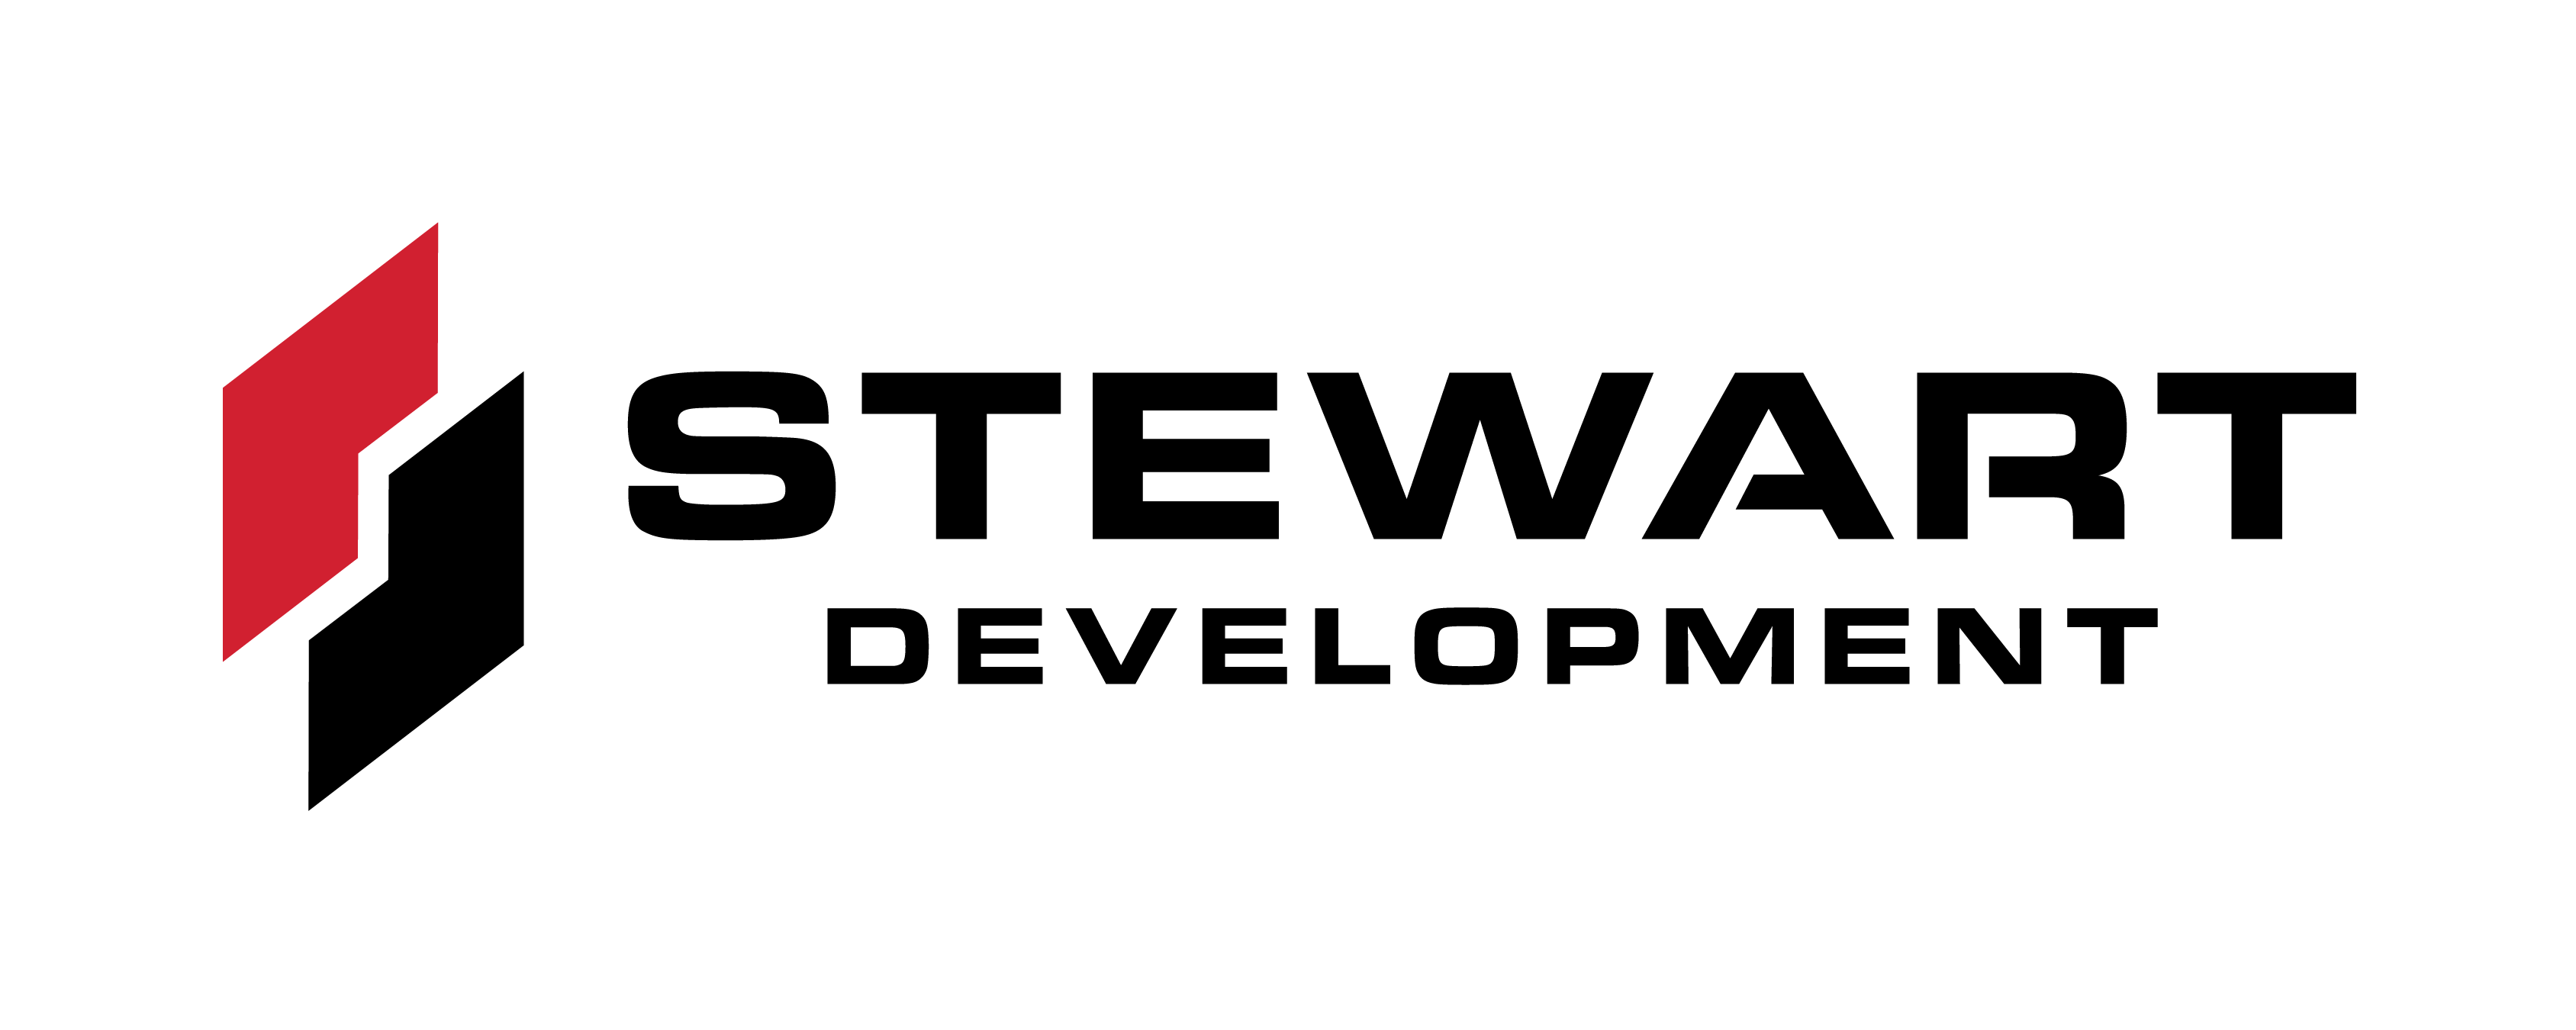 Stewart Development